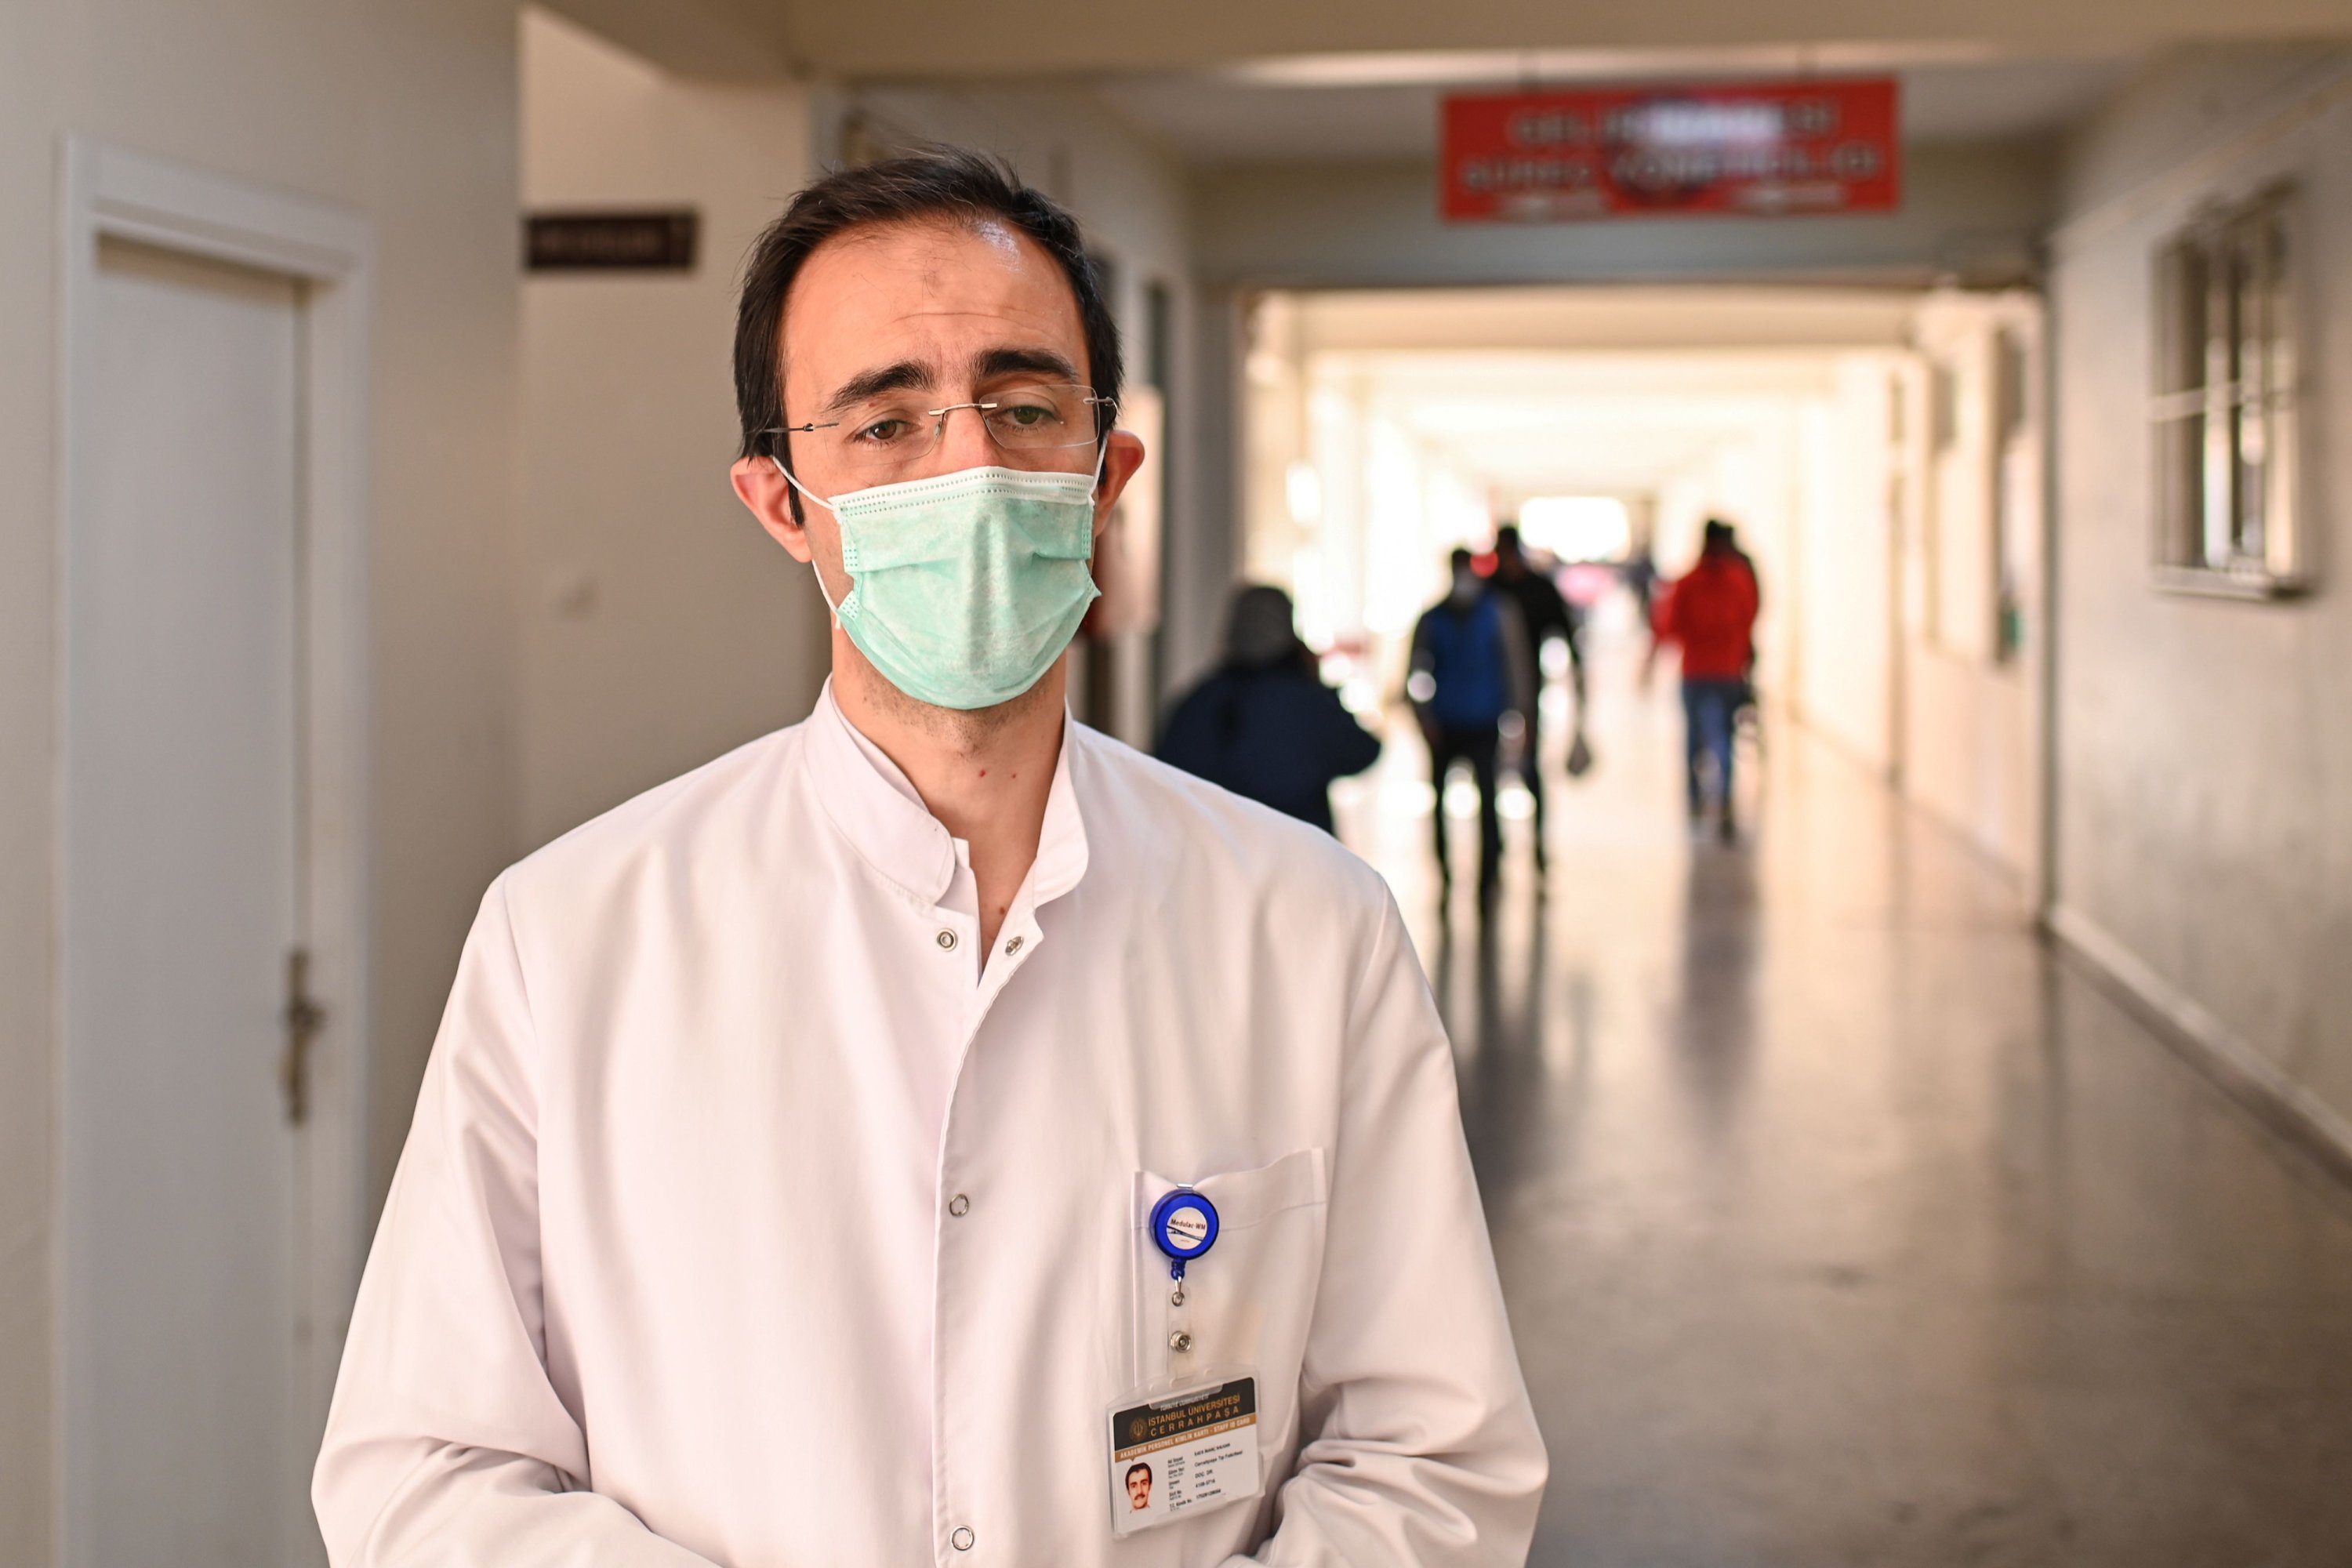   COVID-19 hastalarını tedavi eden yardımcı doçent Ilker İnan Balkan, 44, bir röportaj sırasında poz veriyor.